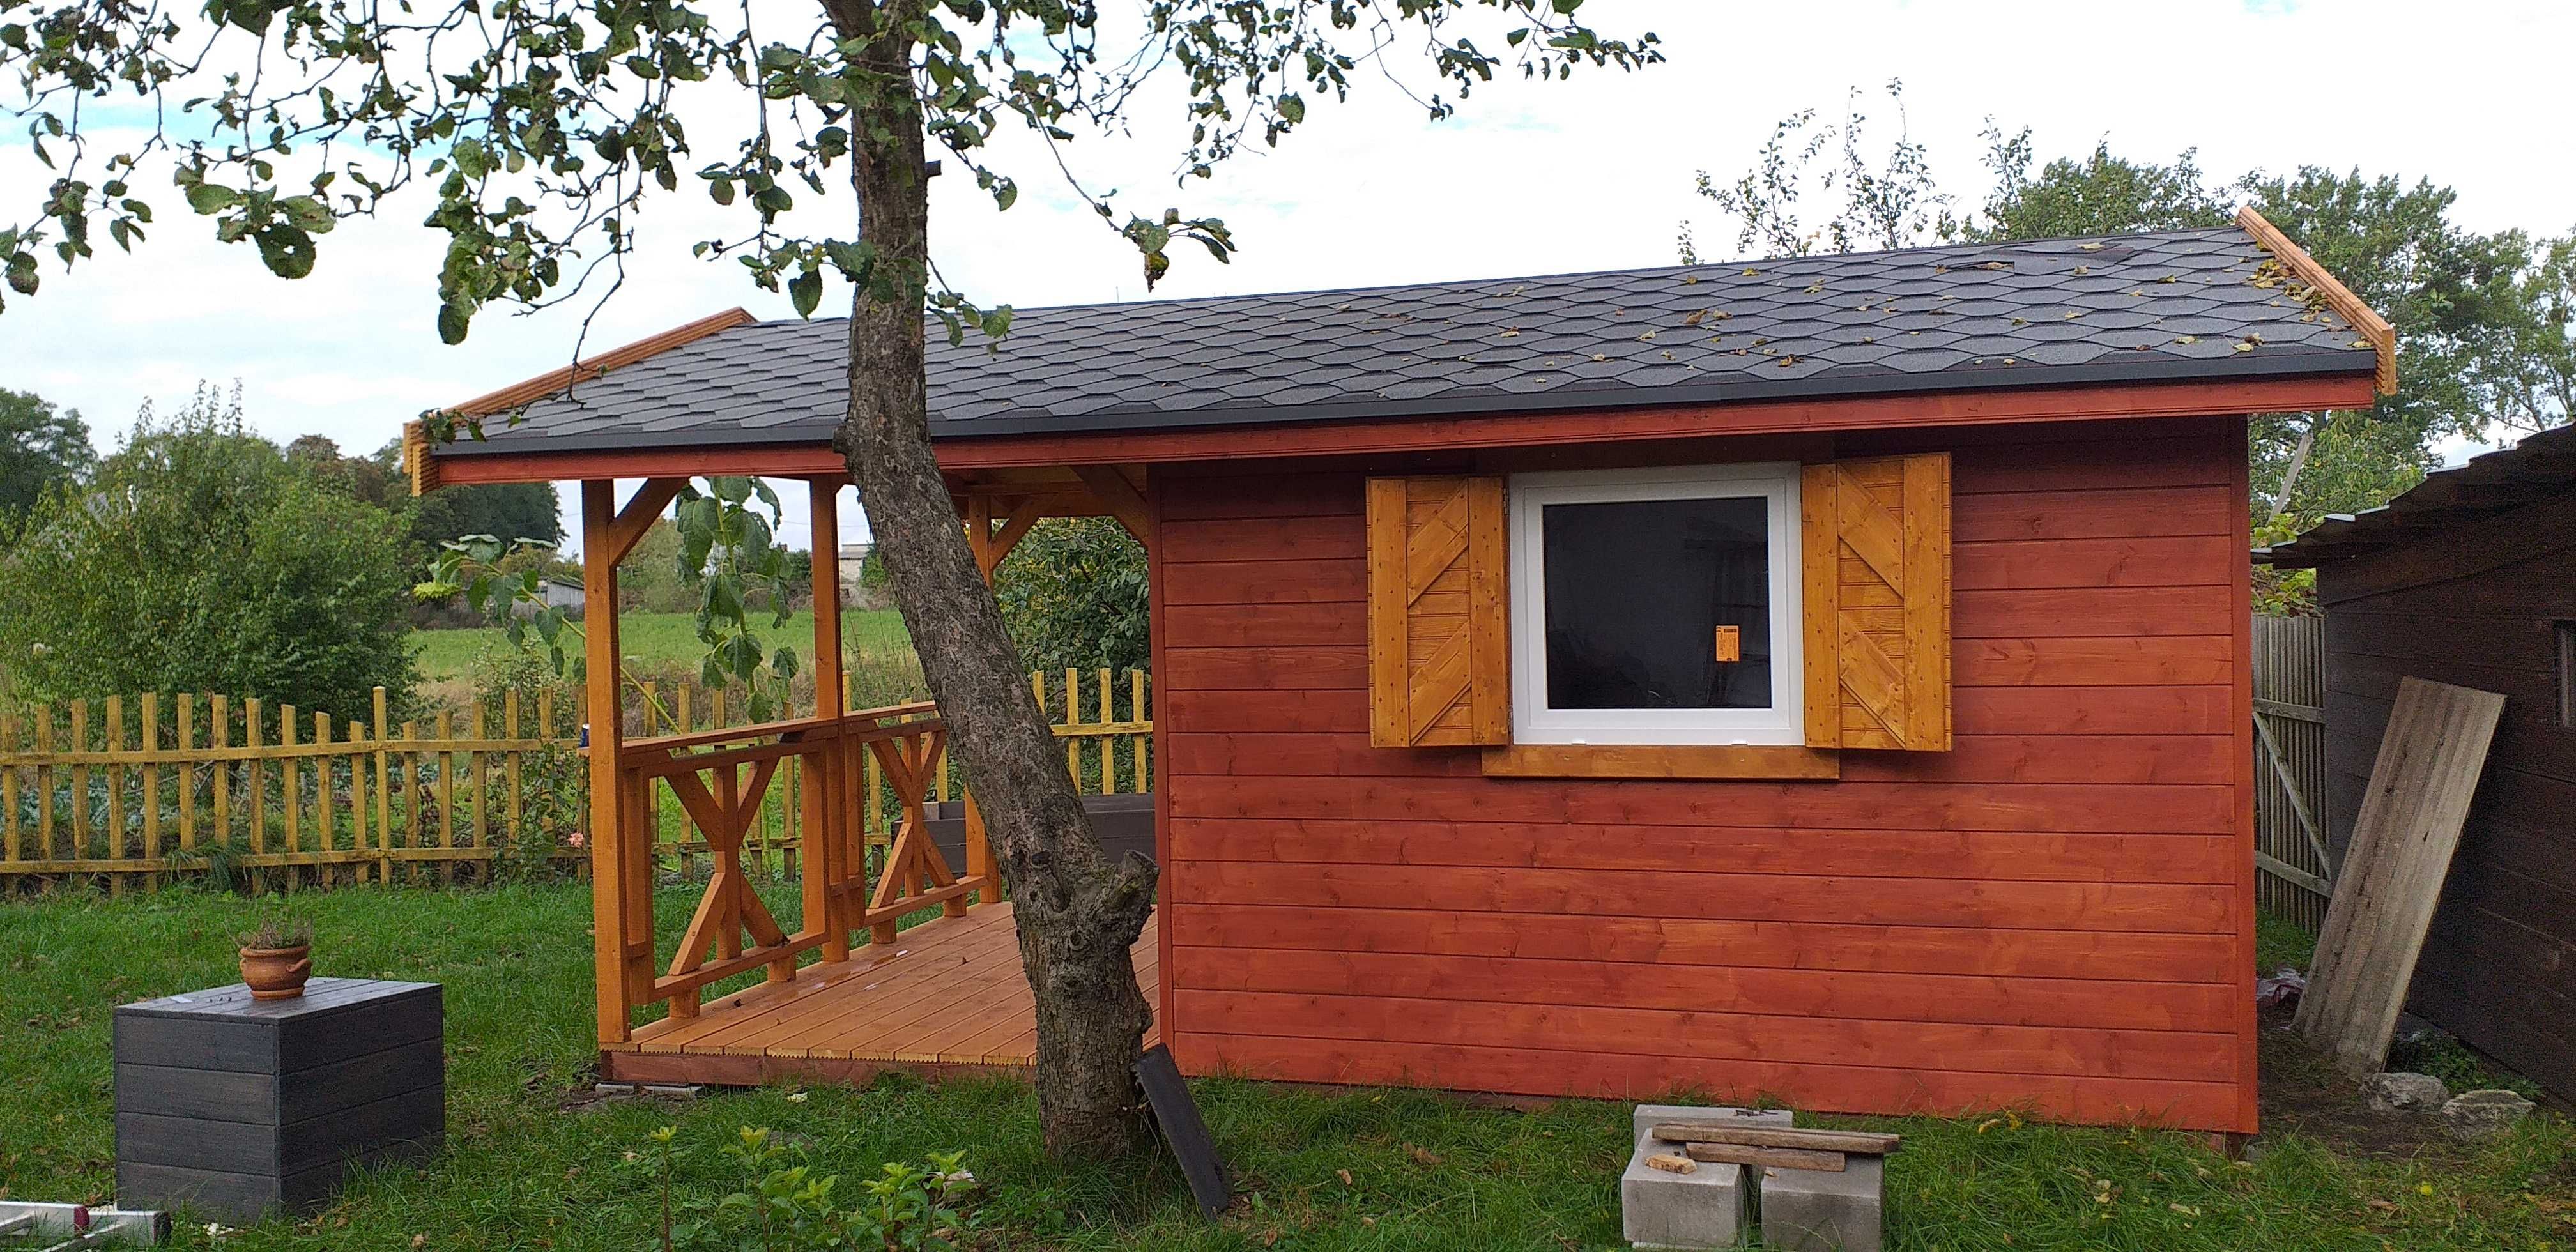 Domki domek drewniany narzędziowe ogrodowe 24mkw